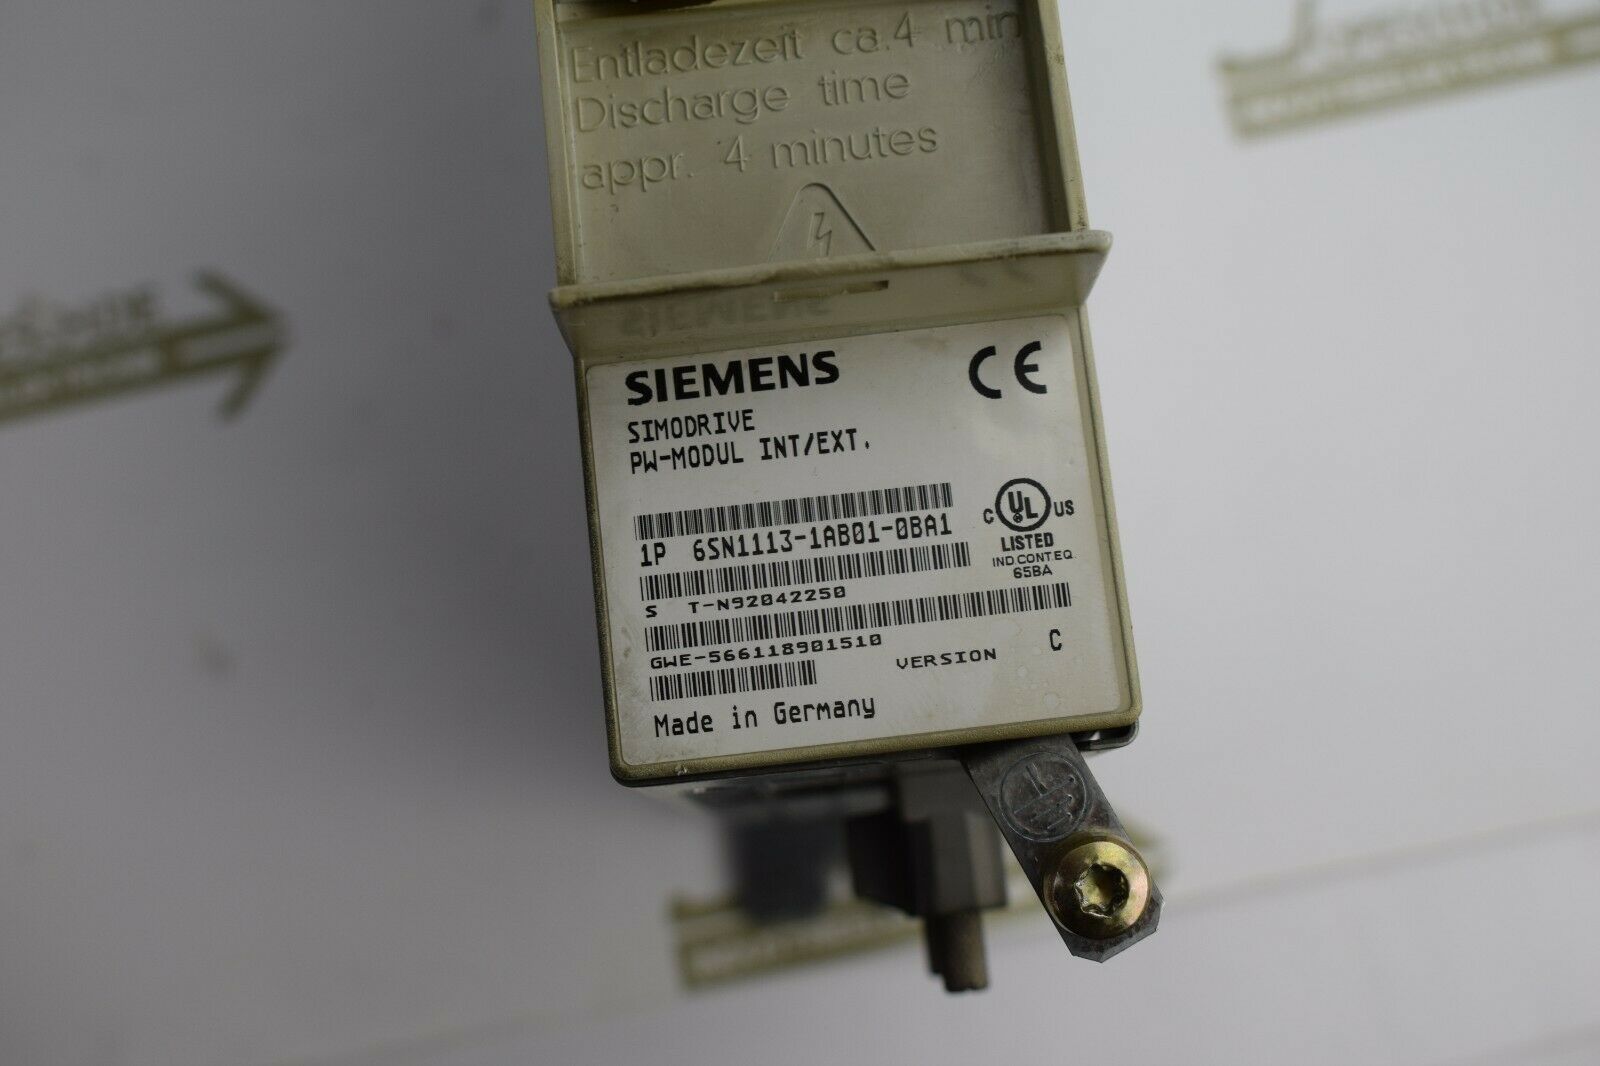 Siemens simodrive PW-Modul 6SN1 113-1AB01-0BA1 ( 6SN1113-1AB01-0BA1 )